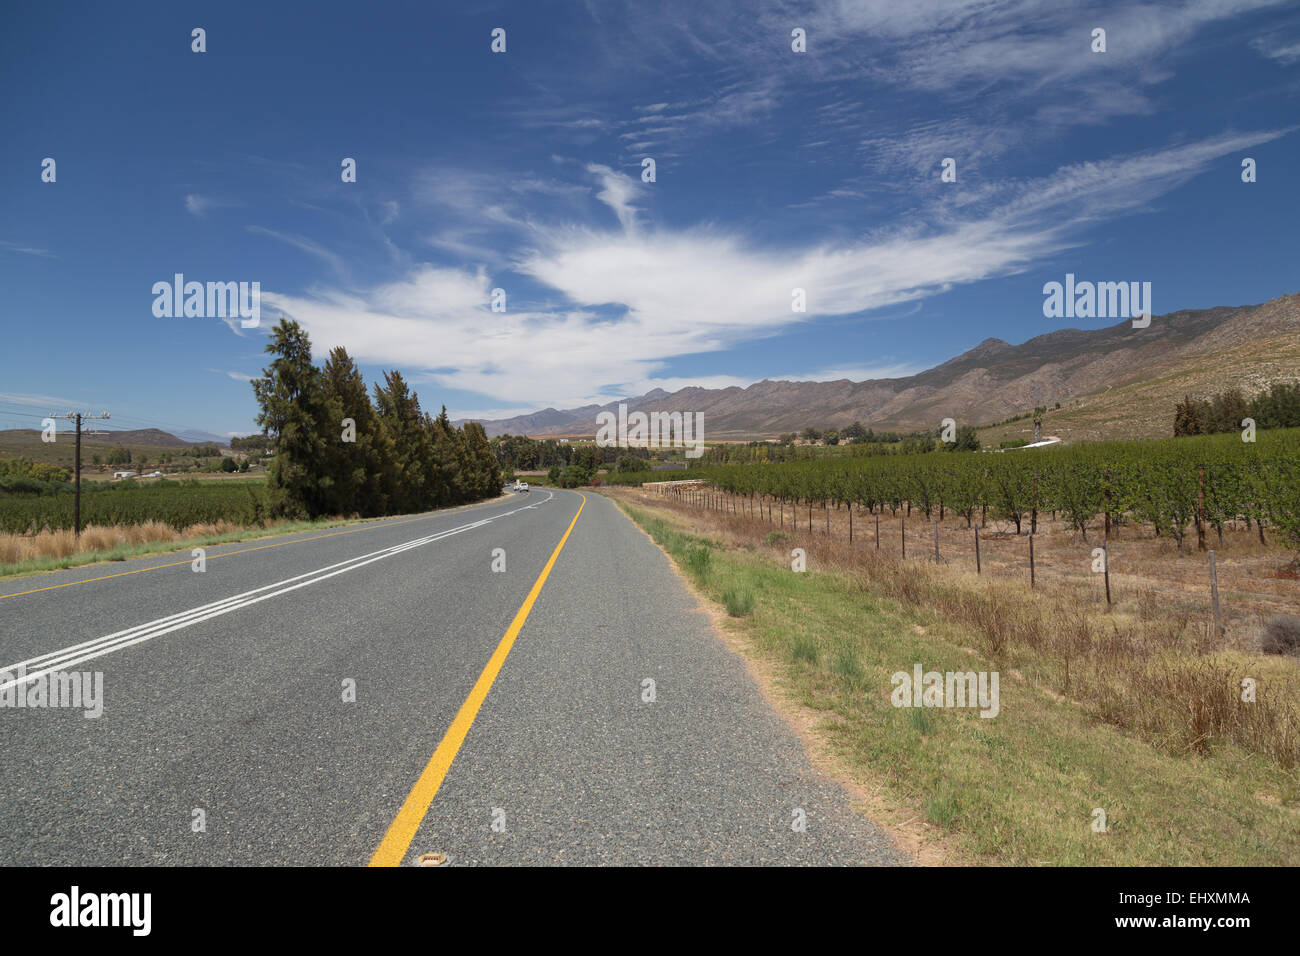 La bella via 62 auto da Oudtshoorn nella Western Cape del Sud Africa passando attraverso i vigneti e le gamme della montagna. Foto Stock